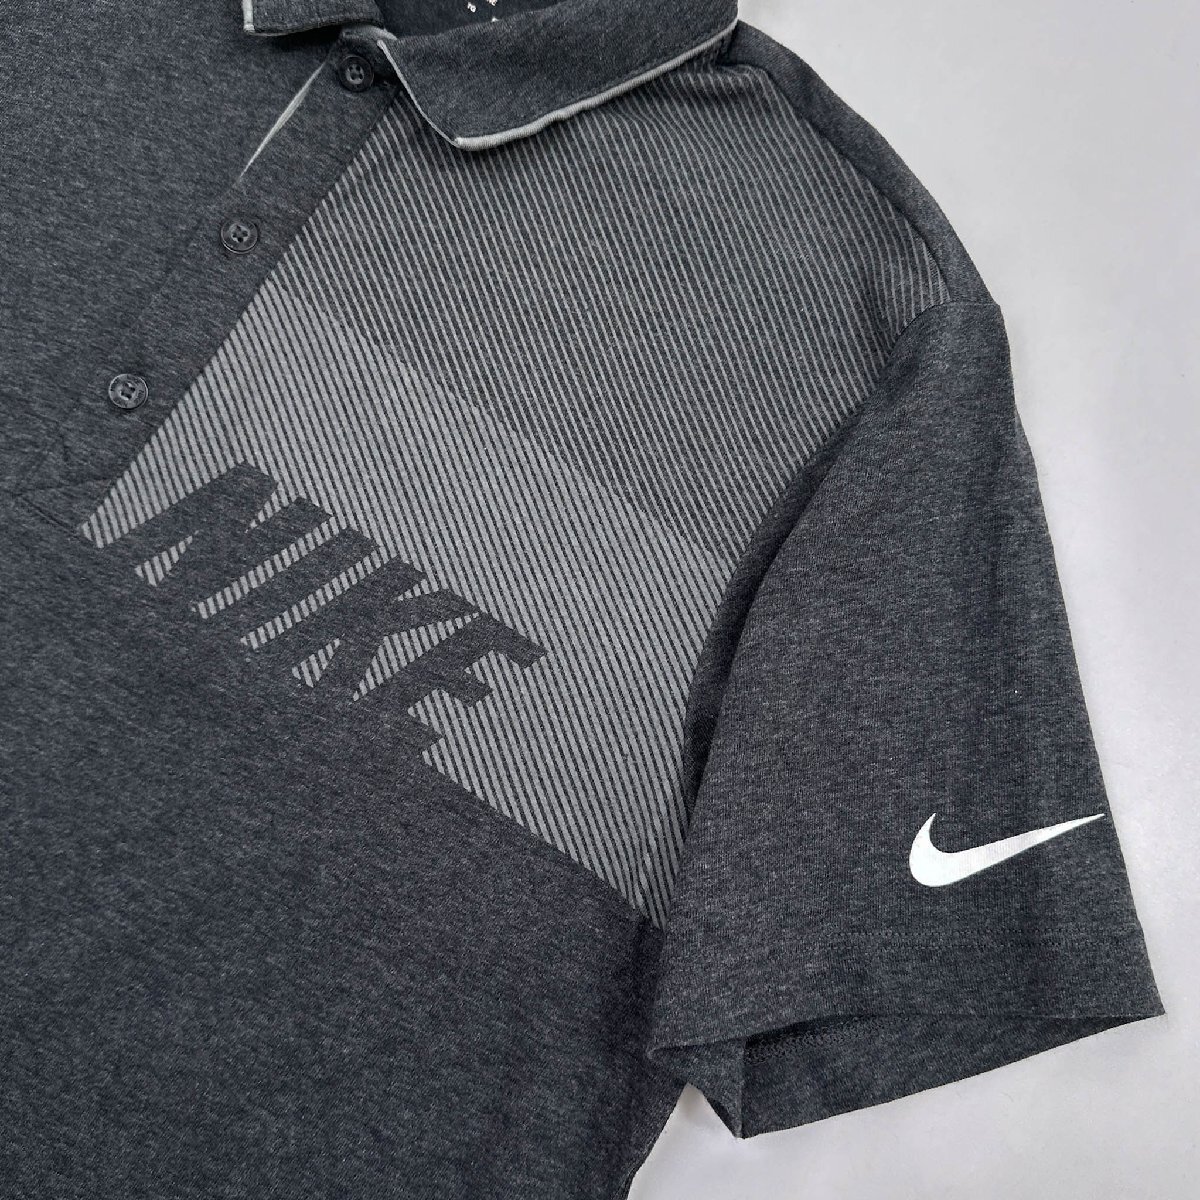 NIKE GOLF ナイキゴルフ DRI-FIT ストレッチ 半袖 ポロシャツ XLサイズ /グレー/メンズ/スポーツ_画像6